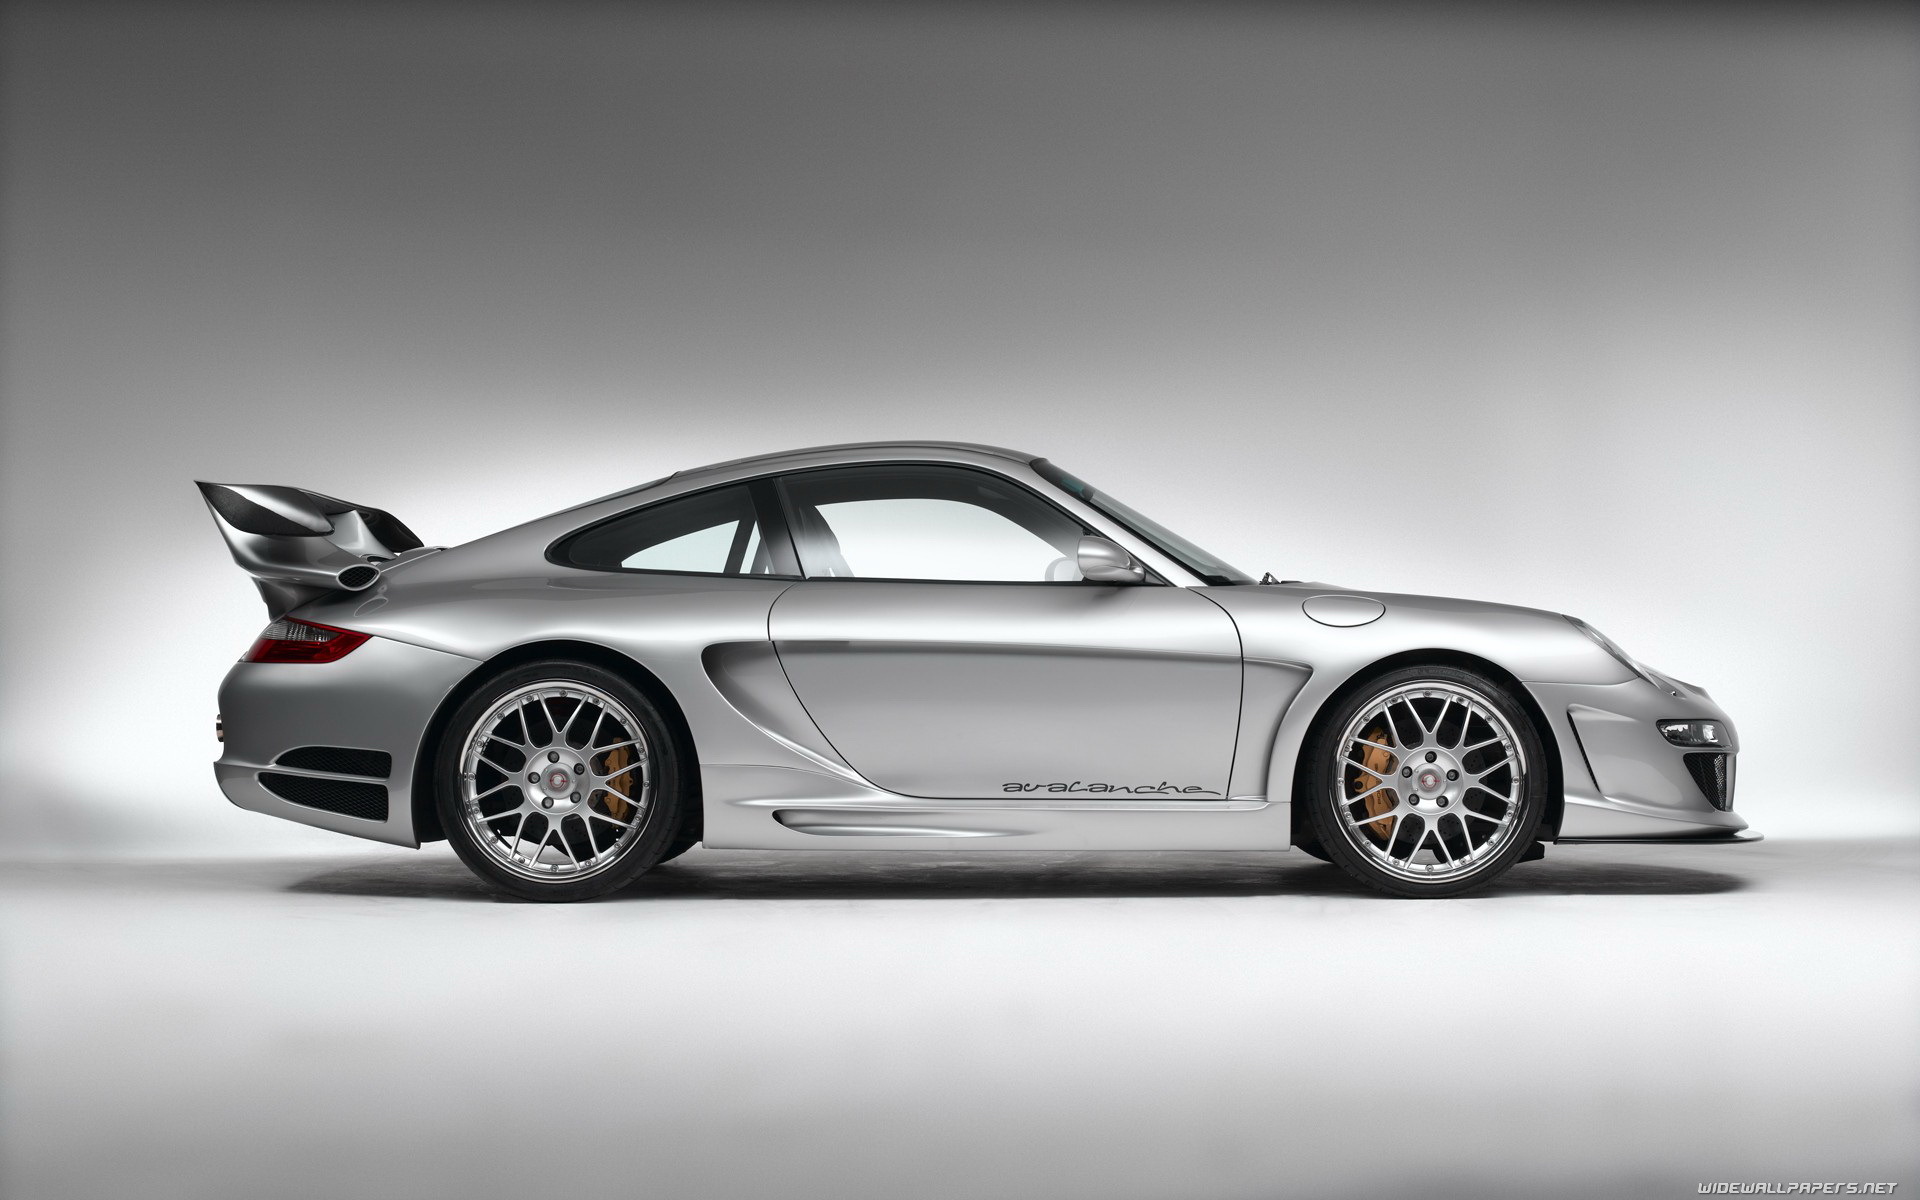 Télécharger des fonds d'écran Porsche HD